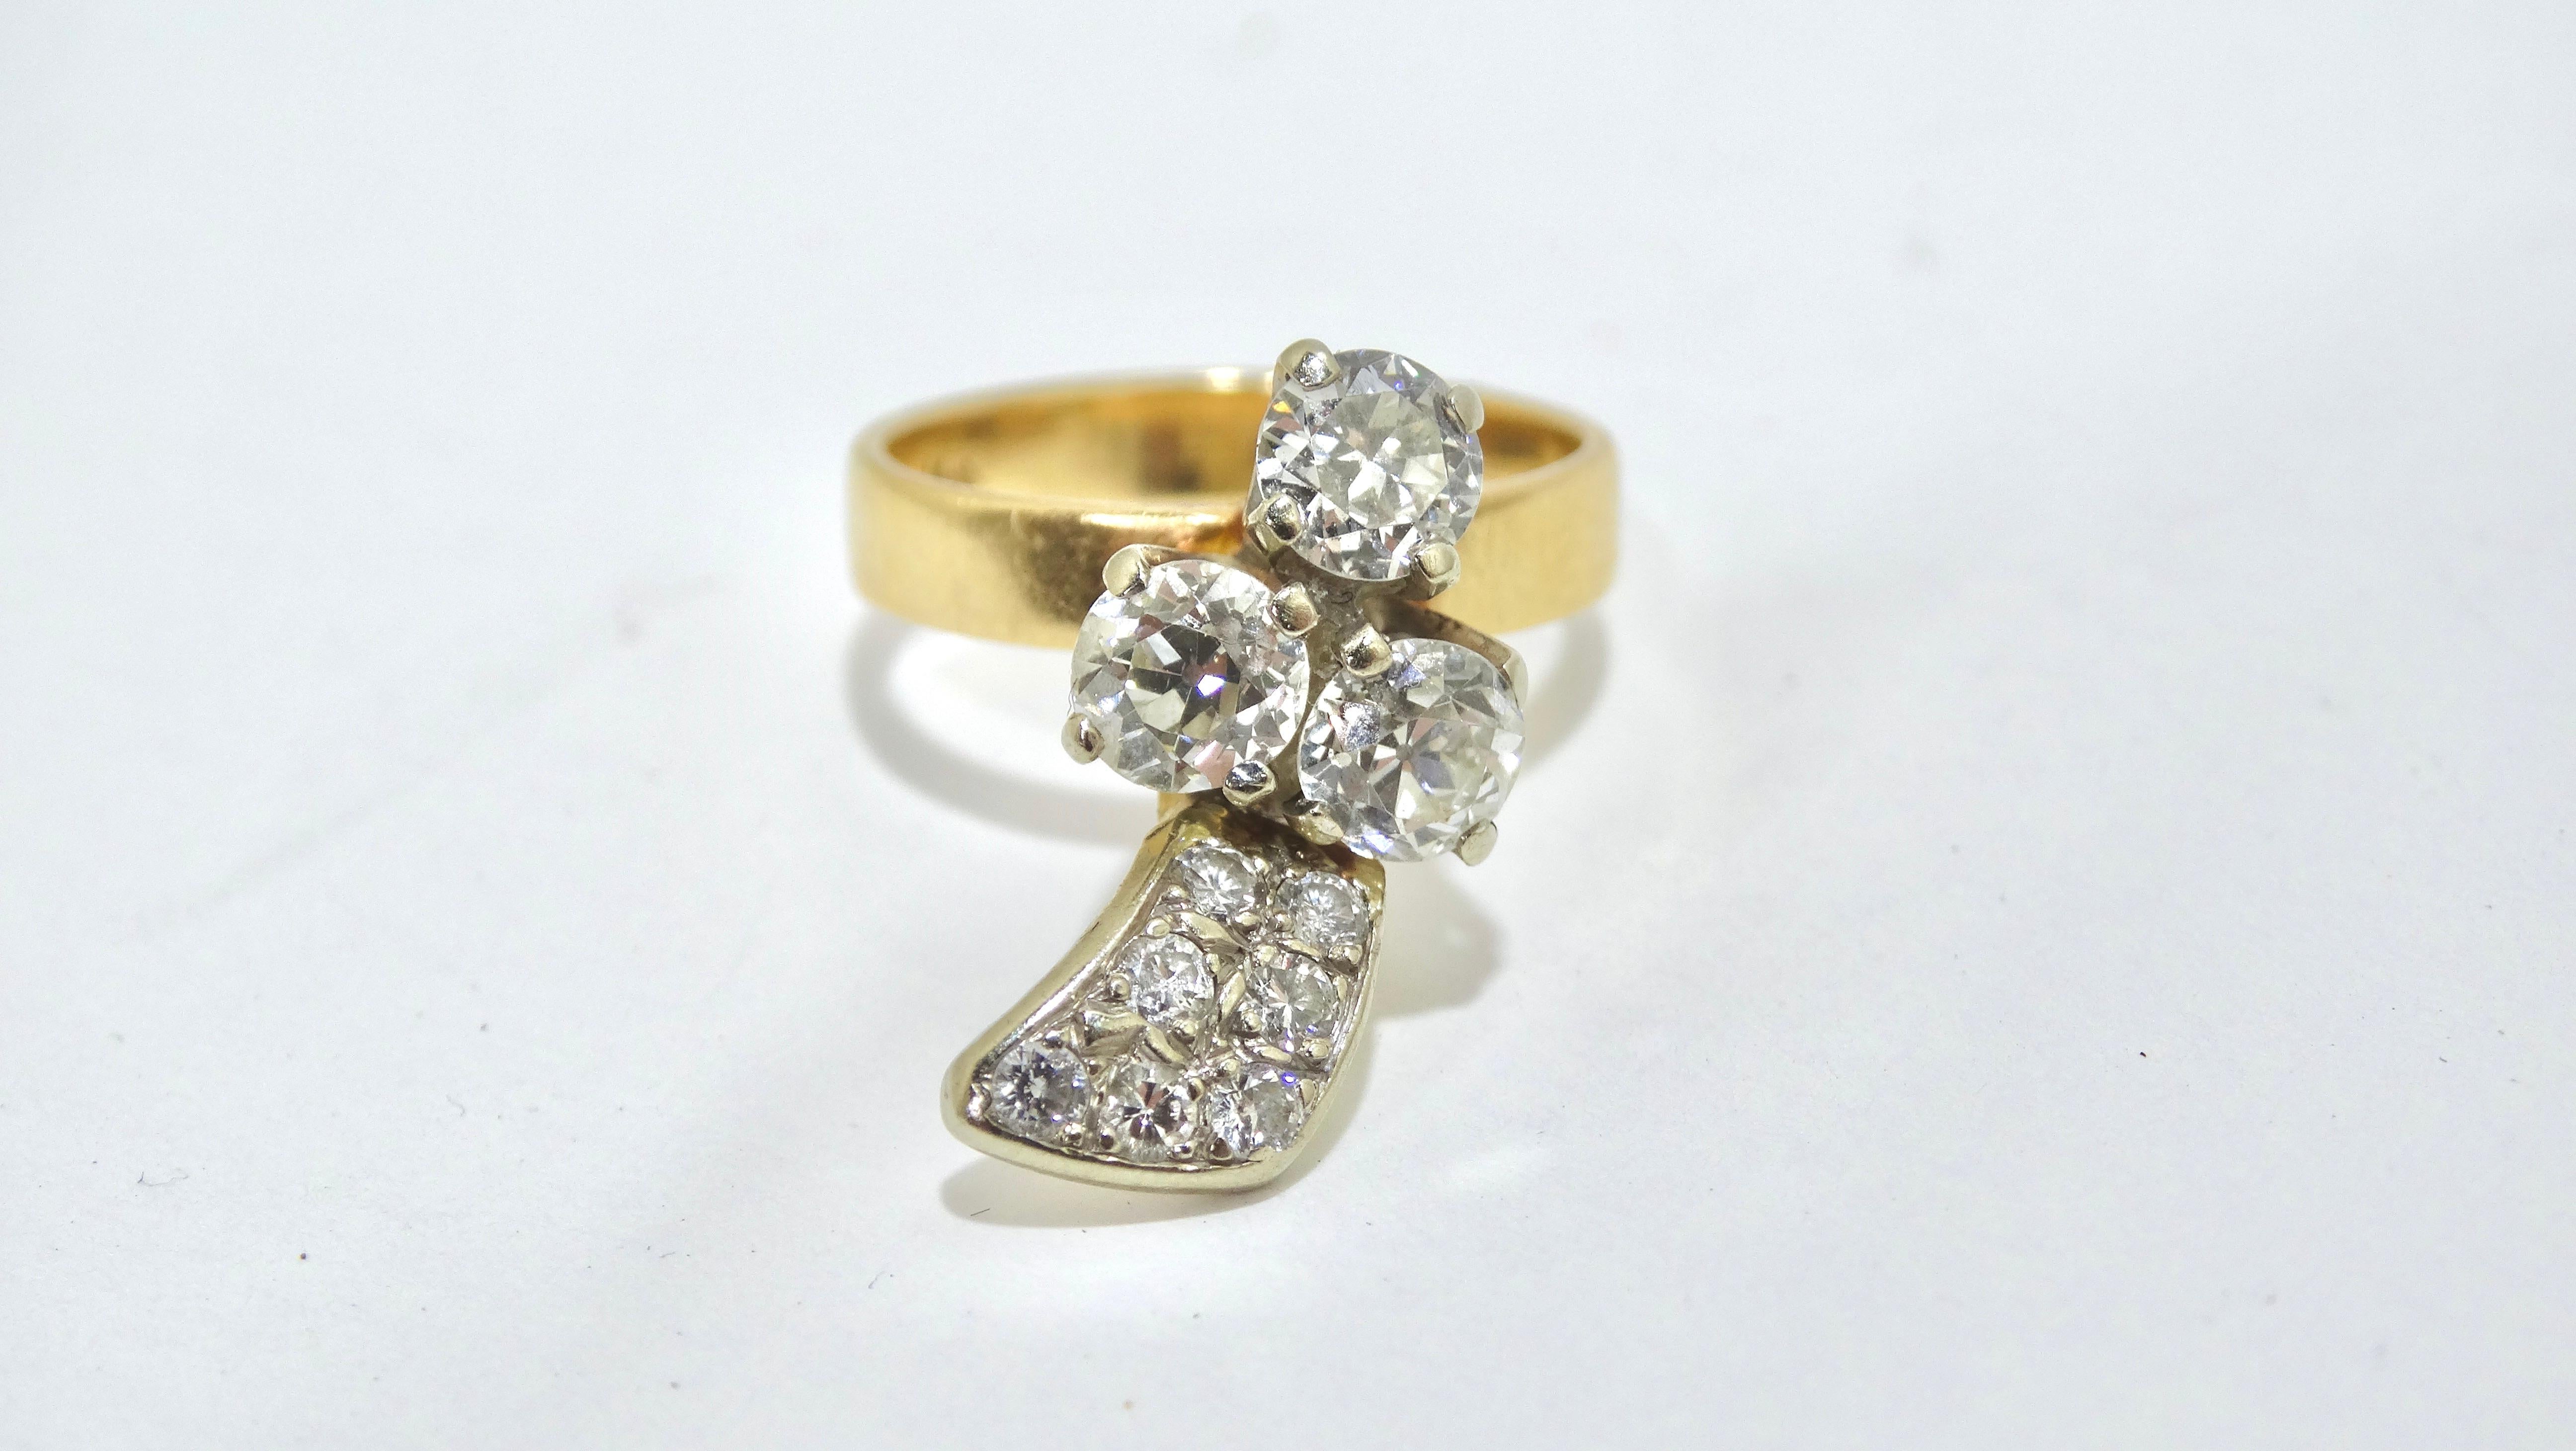 Verpassen Sie nicht Ihre Chance, ein wunderschönes Einzelstück zu ergattern. Der Ring aus 14-karätigem Gold besteht aus rund 1,5 Karat Diamanten in einer einzigartigen Form. Kombinieren Sie ihn mit anderen Ringen, um einen mehrschichtigen Look und